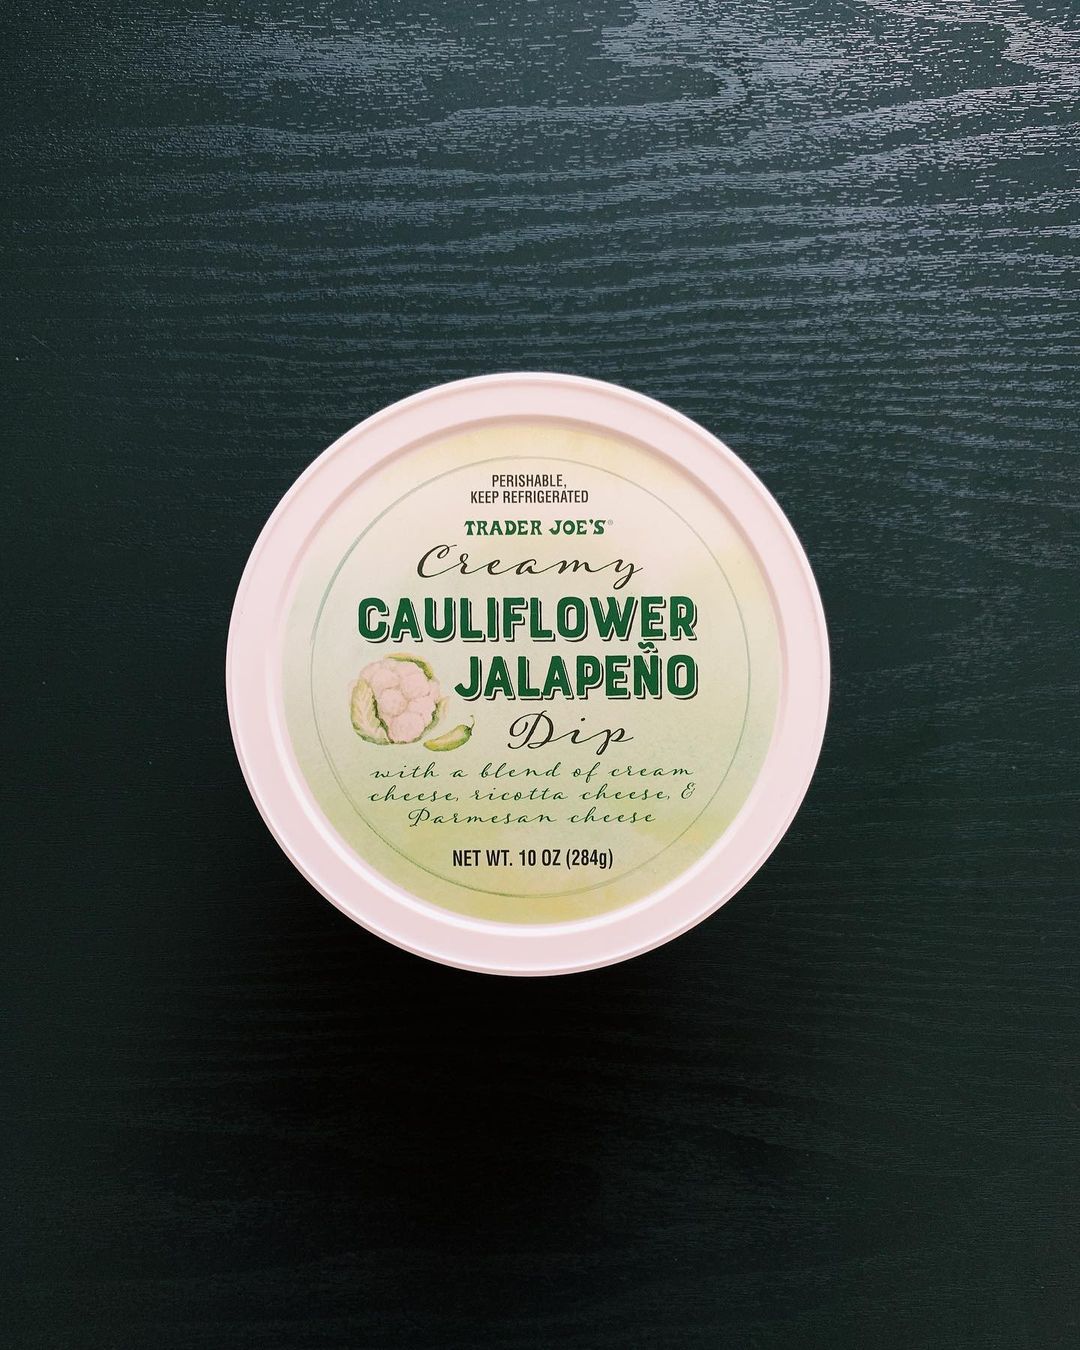 Cauliflower and Jalapeño Dip: 8/10

Th...